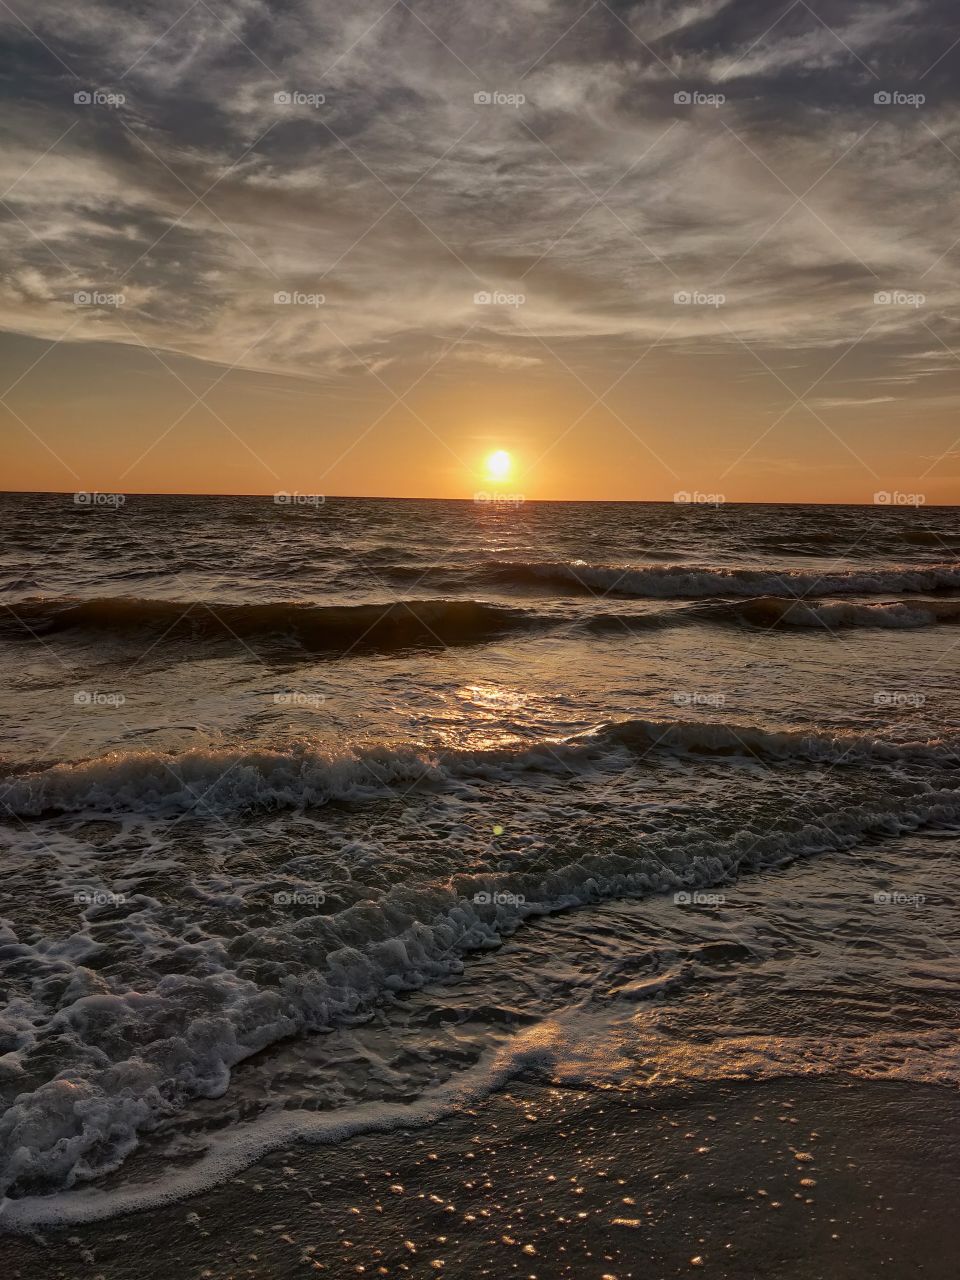 Sunset on Captiva Island, Florida